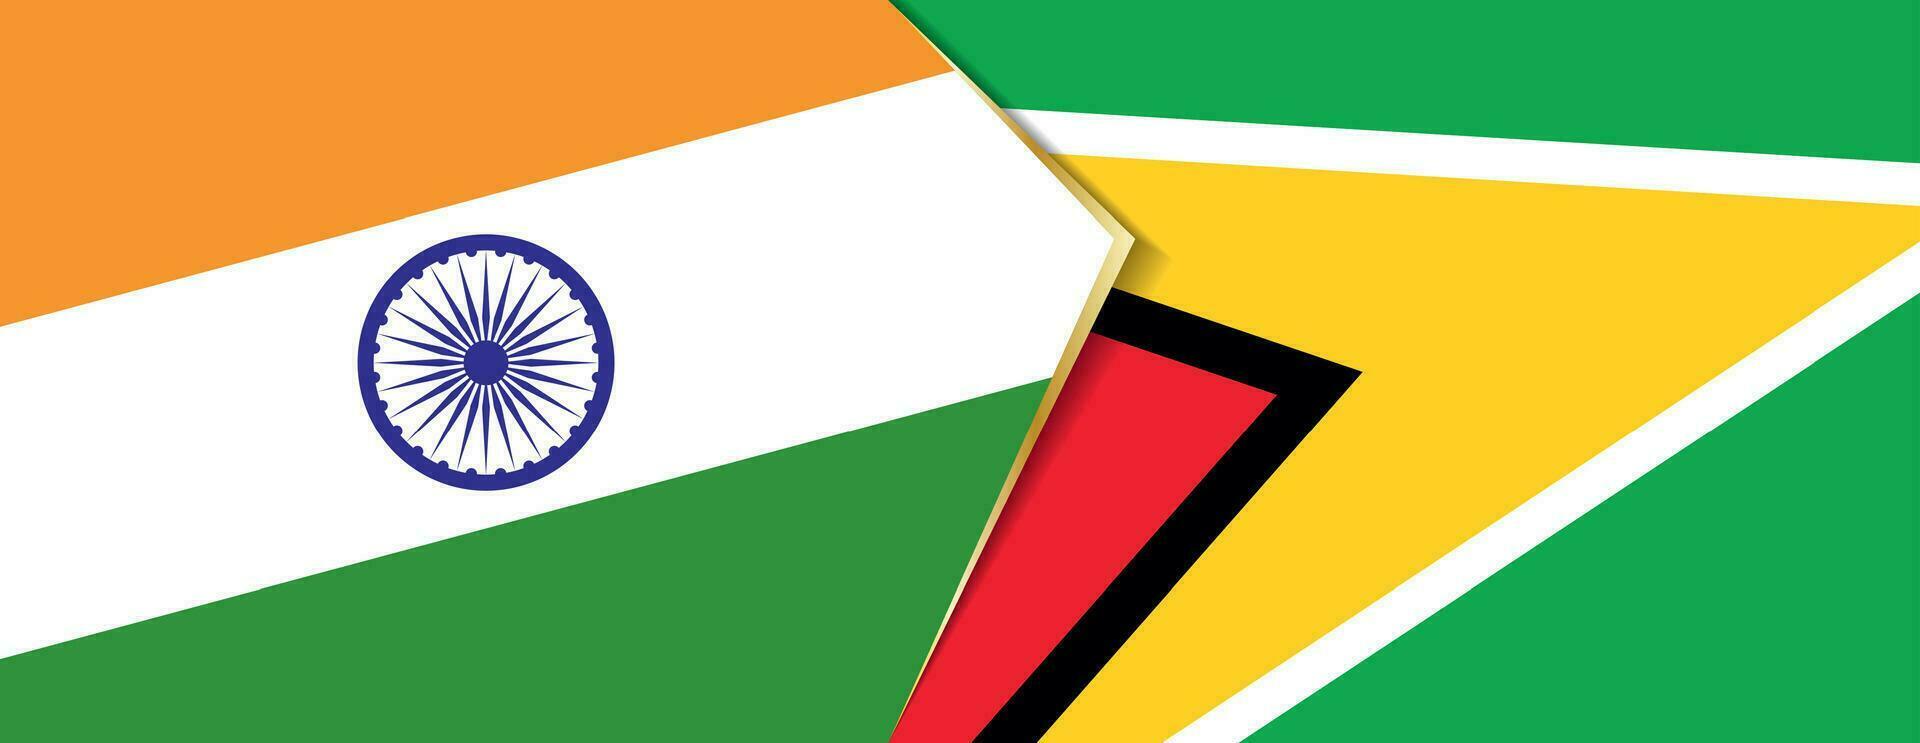 India e Guyana bandiere, Due vettore bandiere.